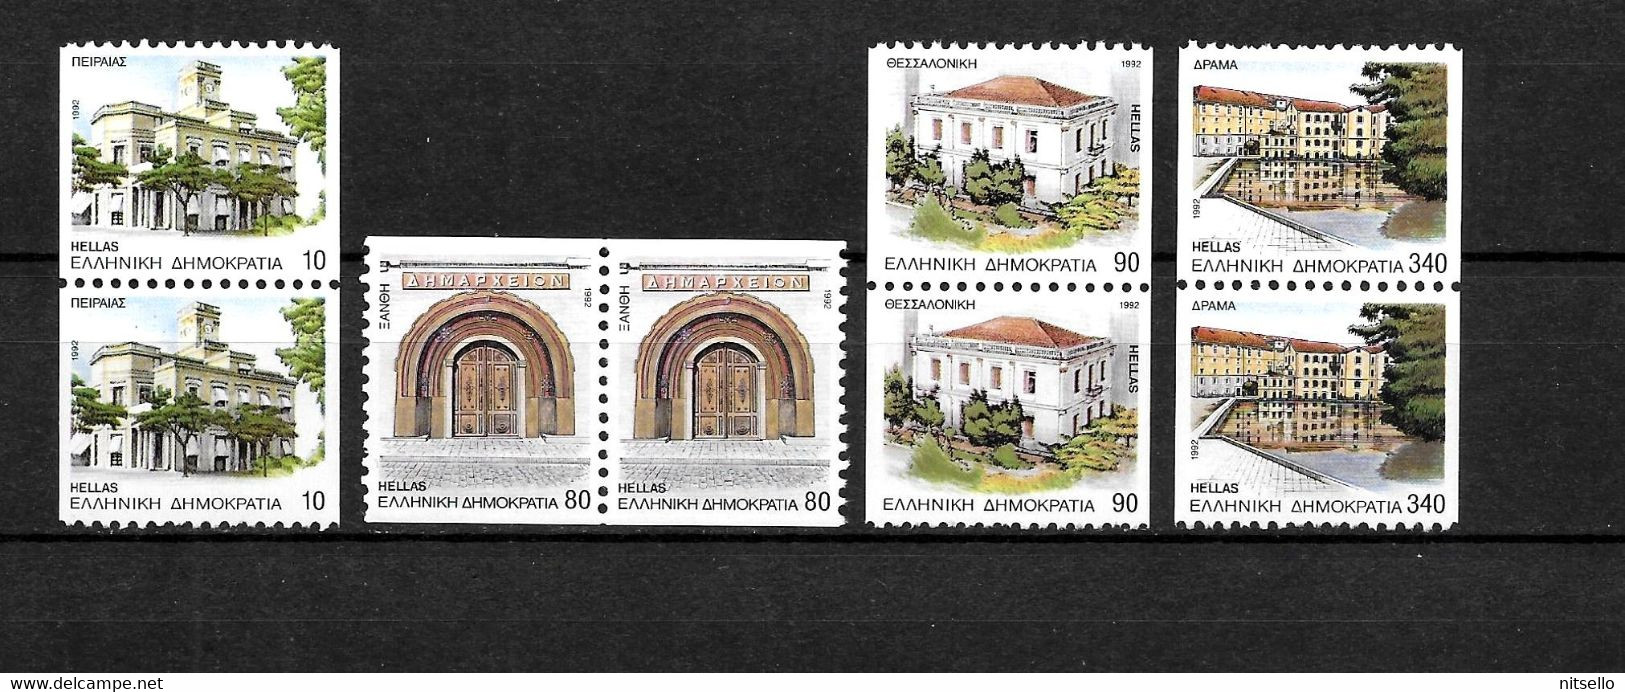 LOTE 2225 /// GRECIA   YVERT Nº  SELLOS DE LA SERIE 1800/1811**MNH  ¡¡¡ OFERTA - LIQUIDATION !!! JE LIQUIDE !!! - Unused Stamps